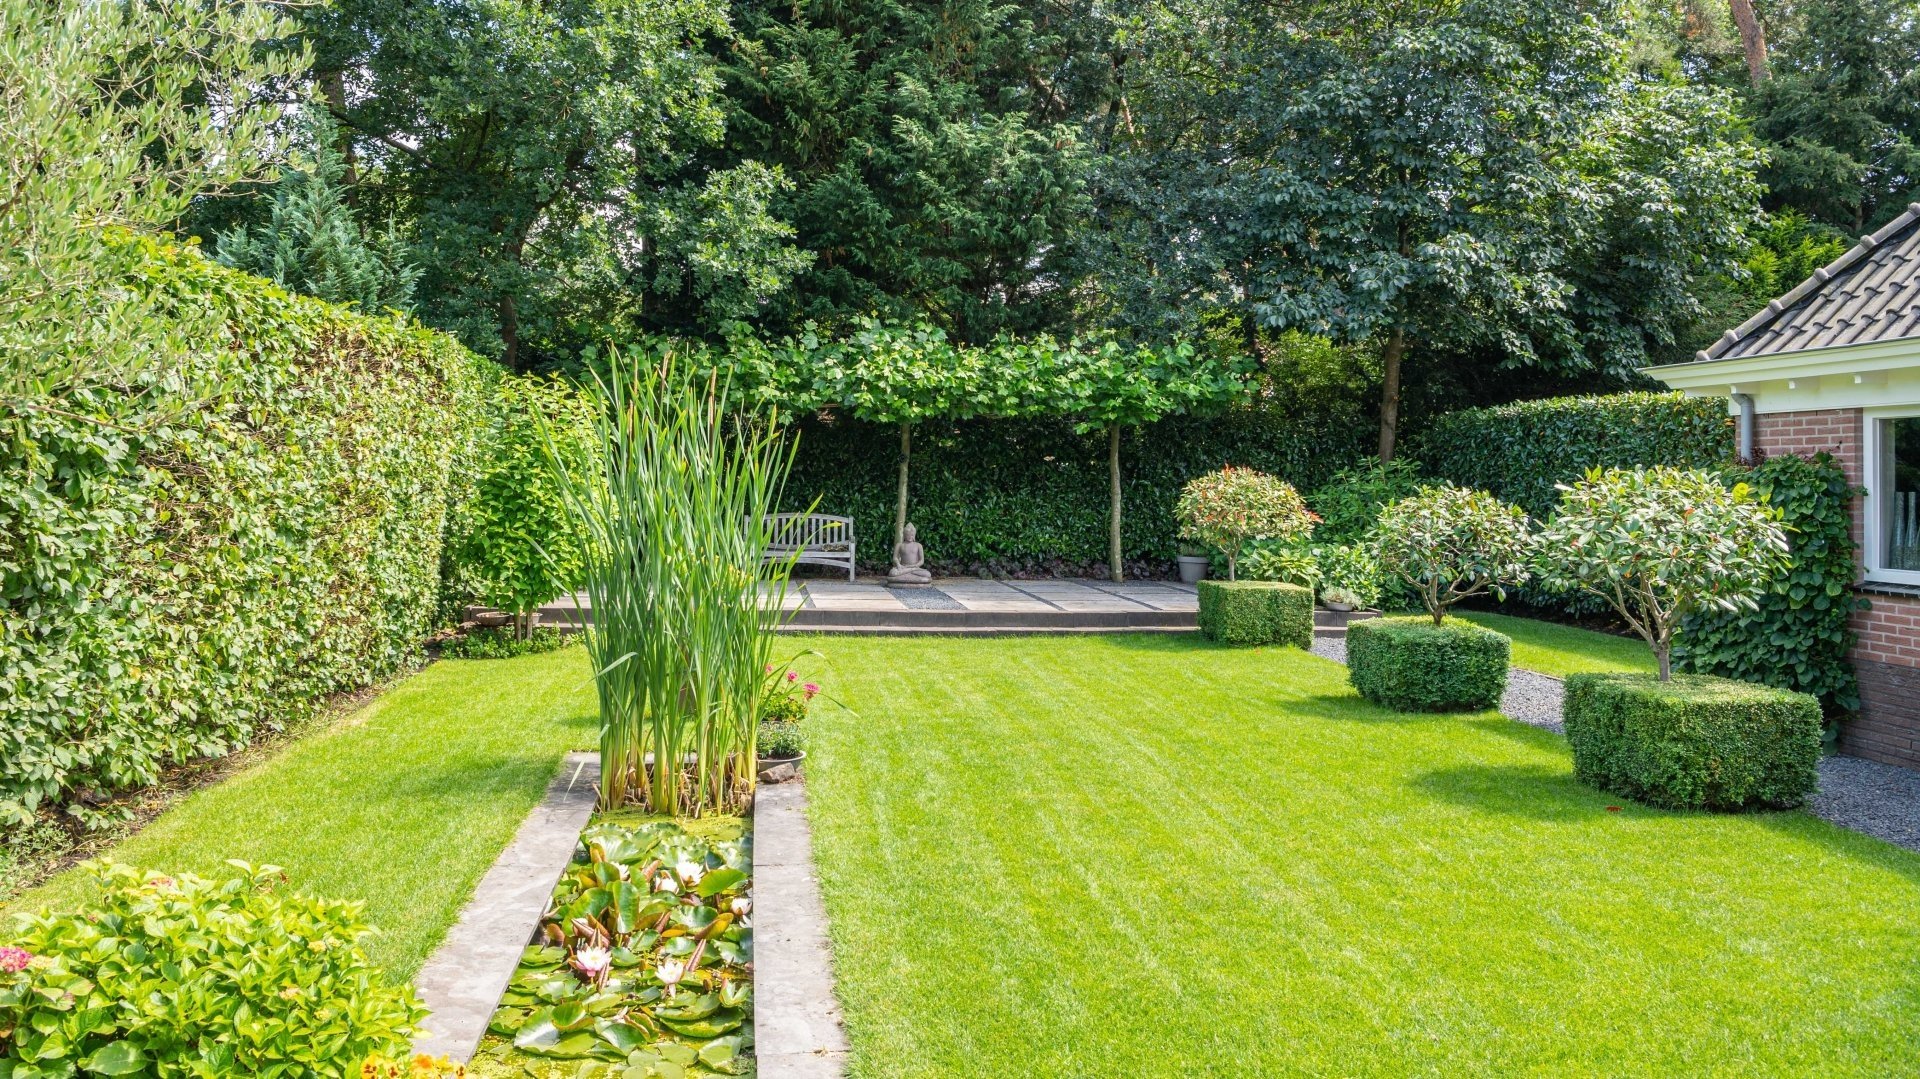 Hovenier nodig om uw tuin netjes te kunnen houden?